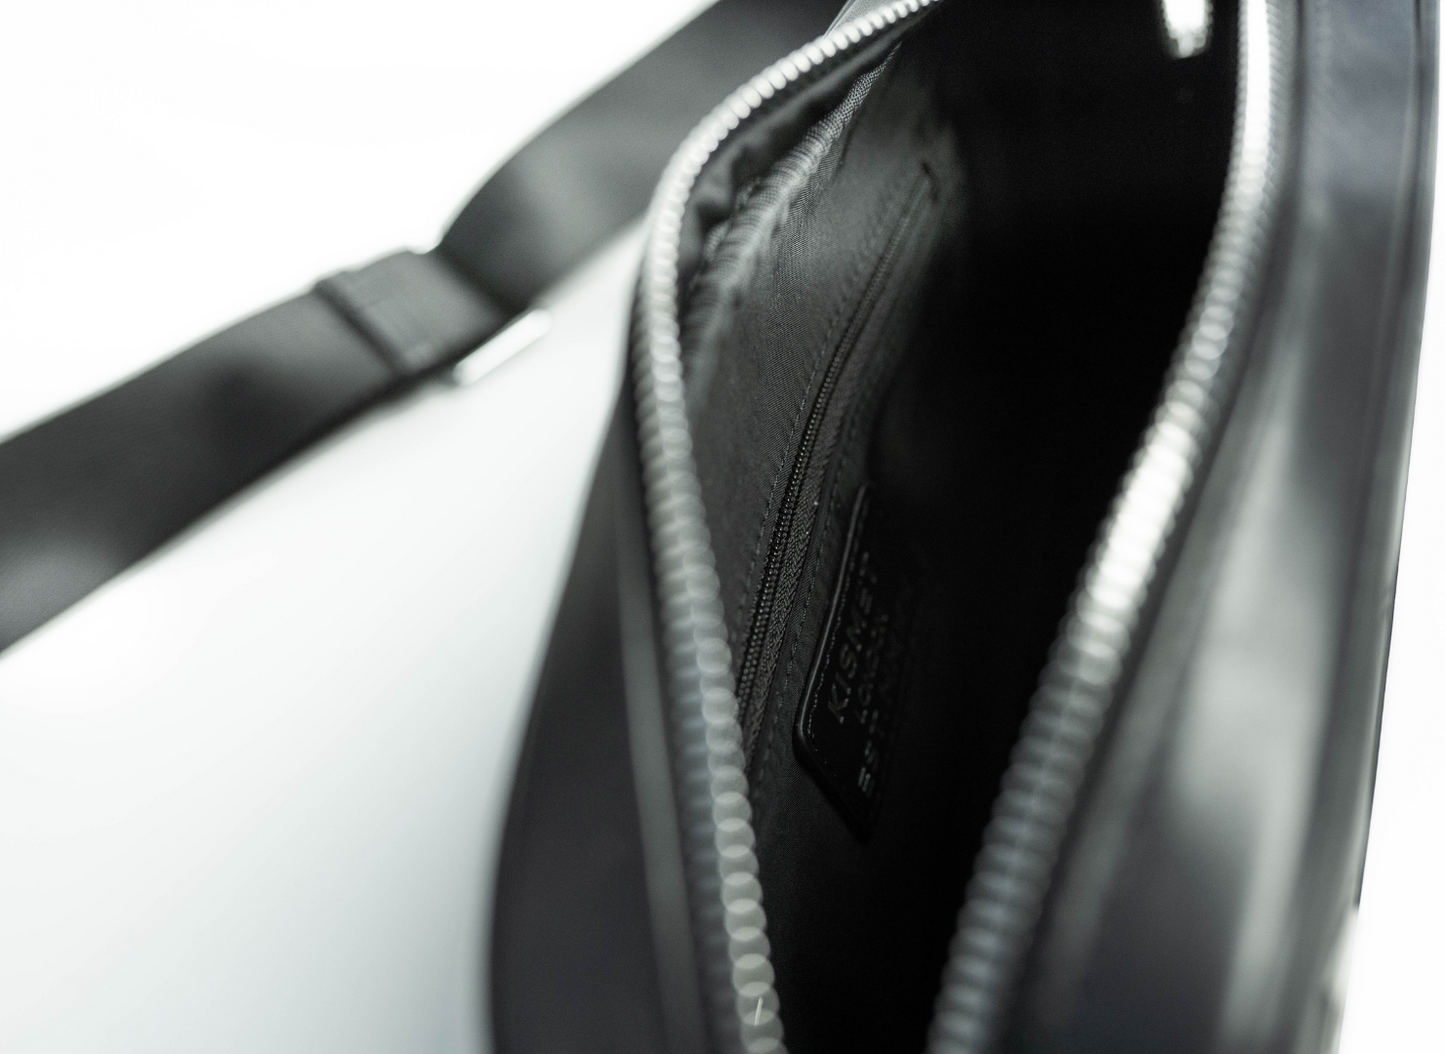 Black Leather Belt Bag | Leather Belt Bag | Kismet London